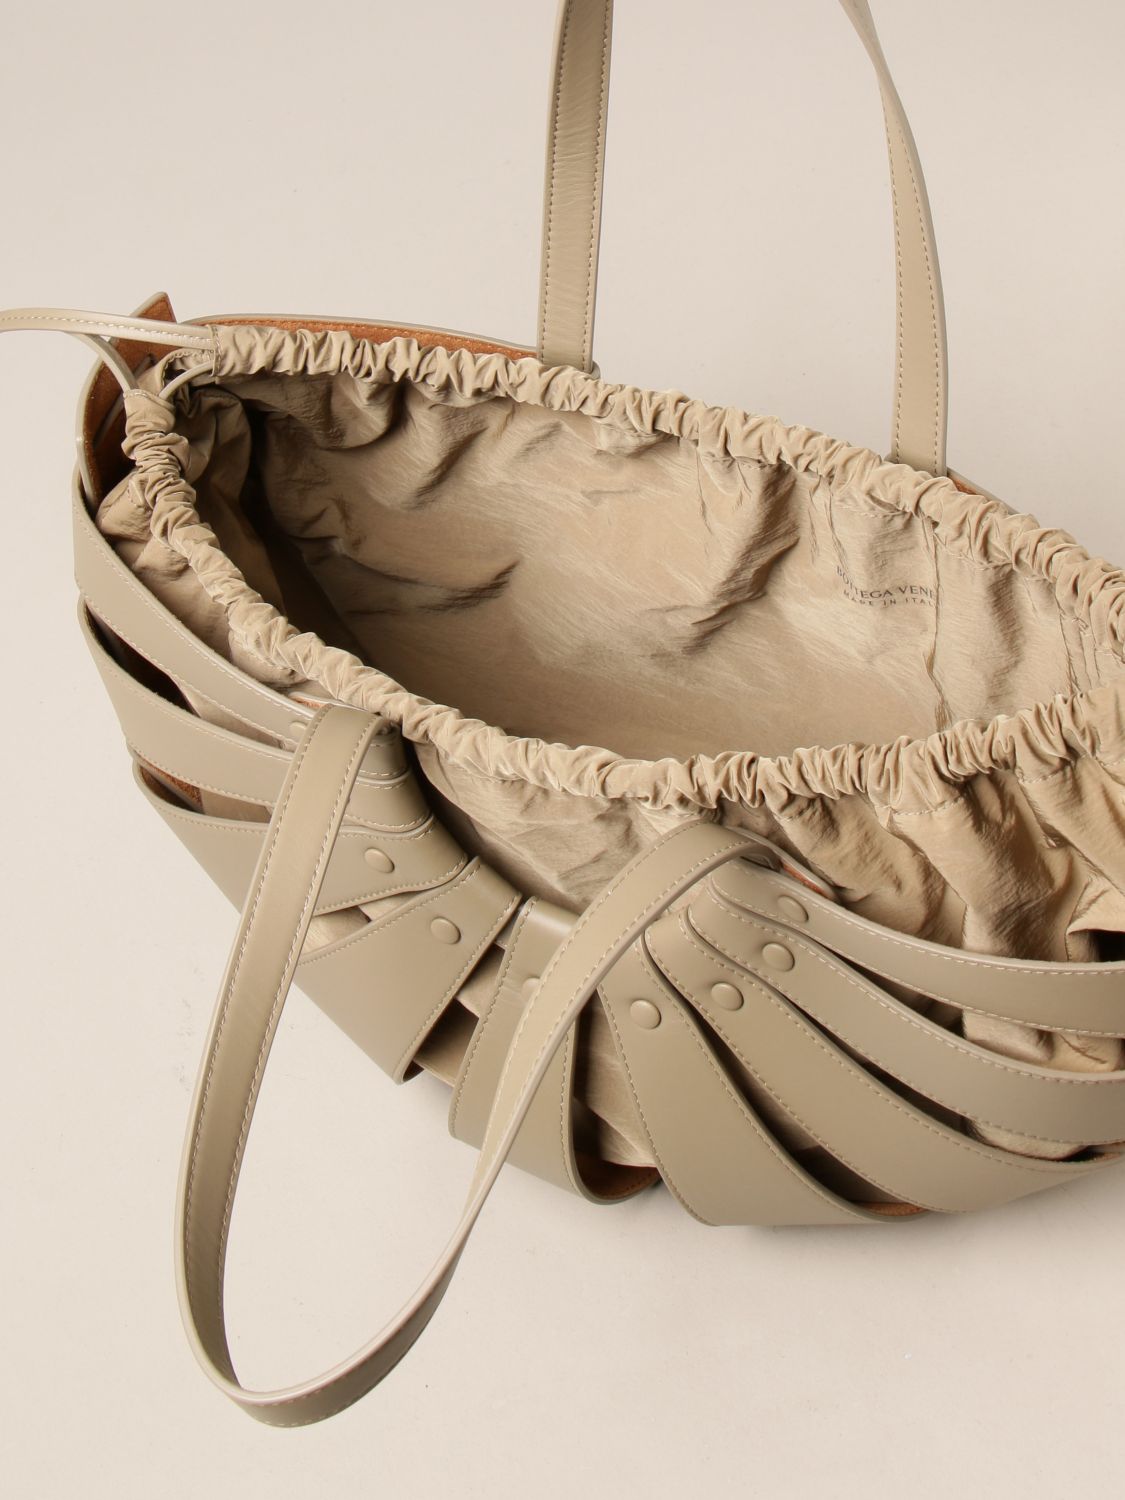 BOTTEGA VENETA: Shell bag in cut out leather | Shoulder Bag Bottega ...